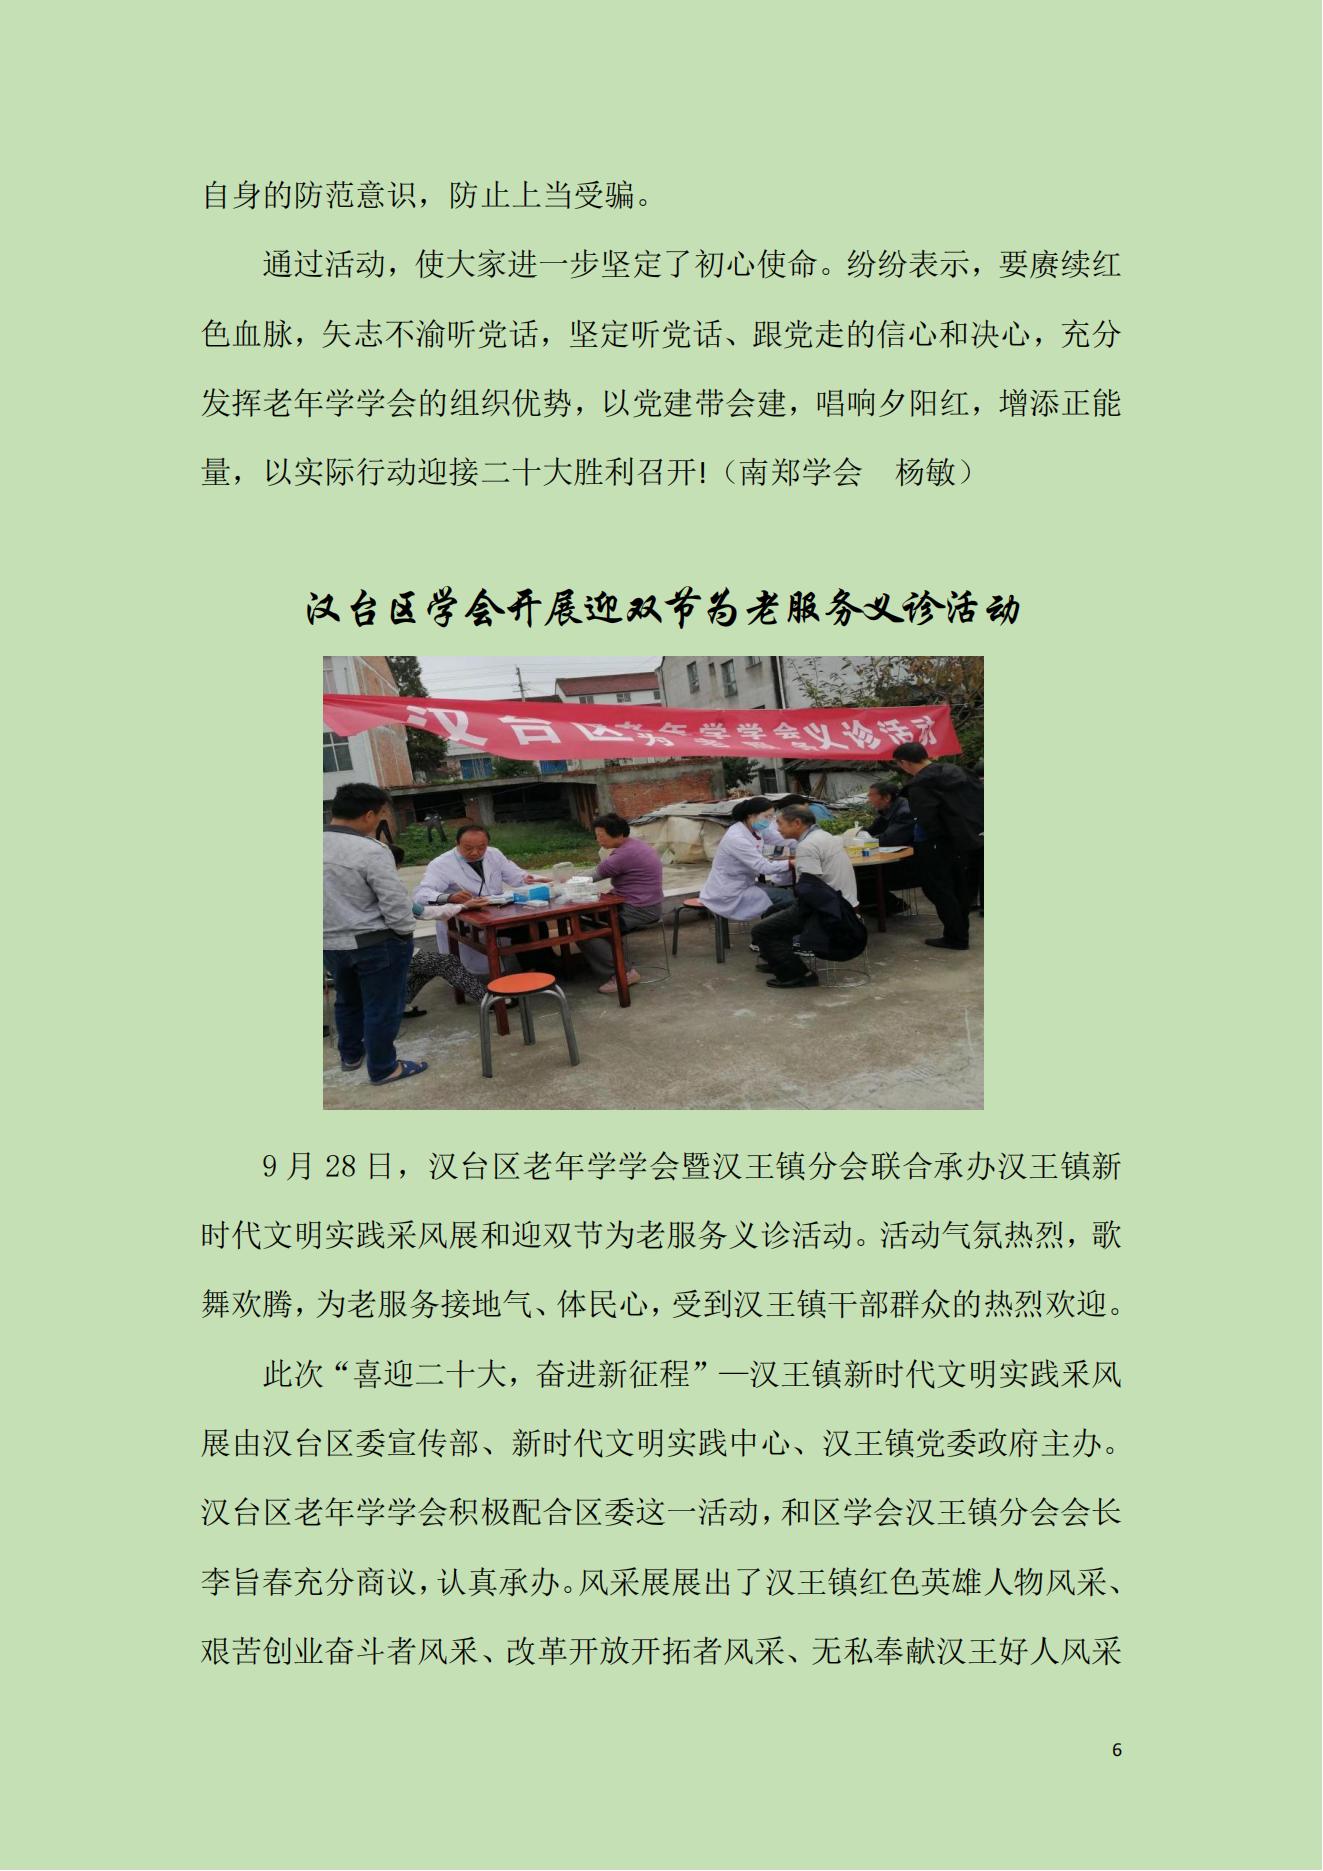 汉中市老年学学会104通讯 - 副本(1)(2)(1)_06.jpg